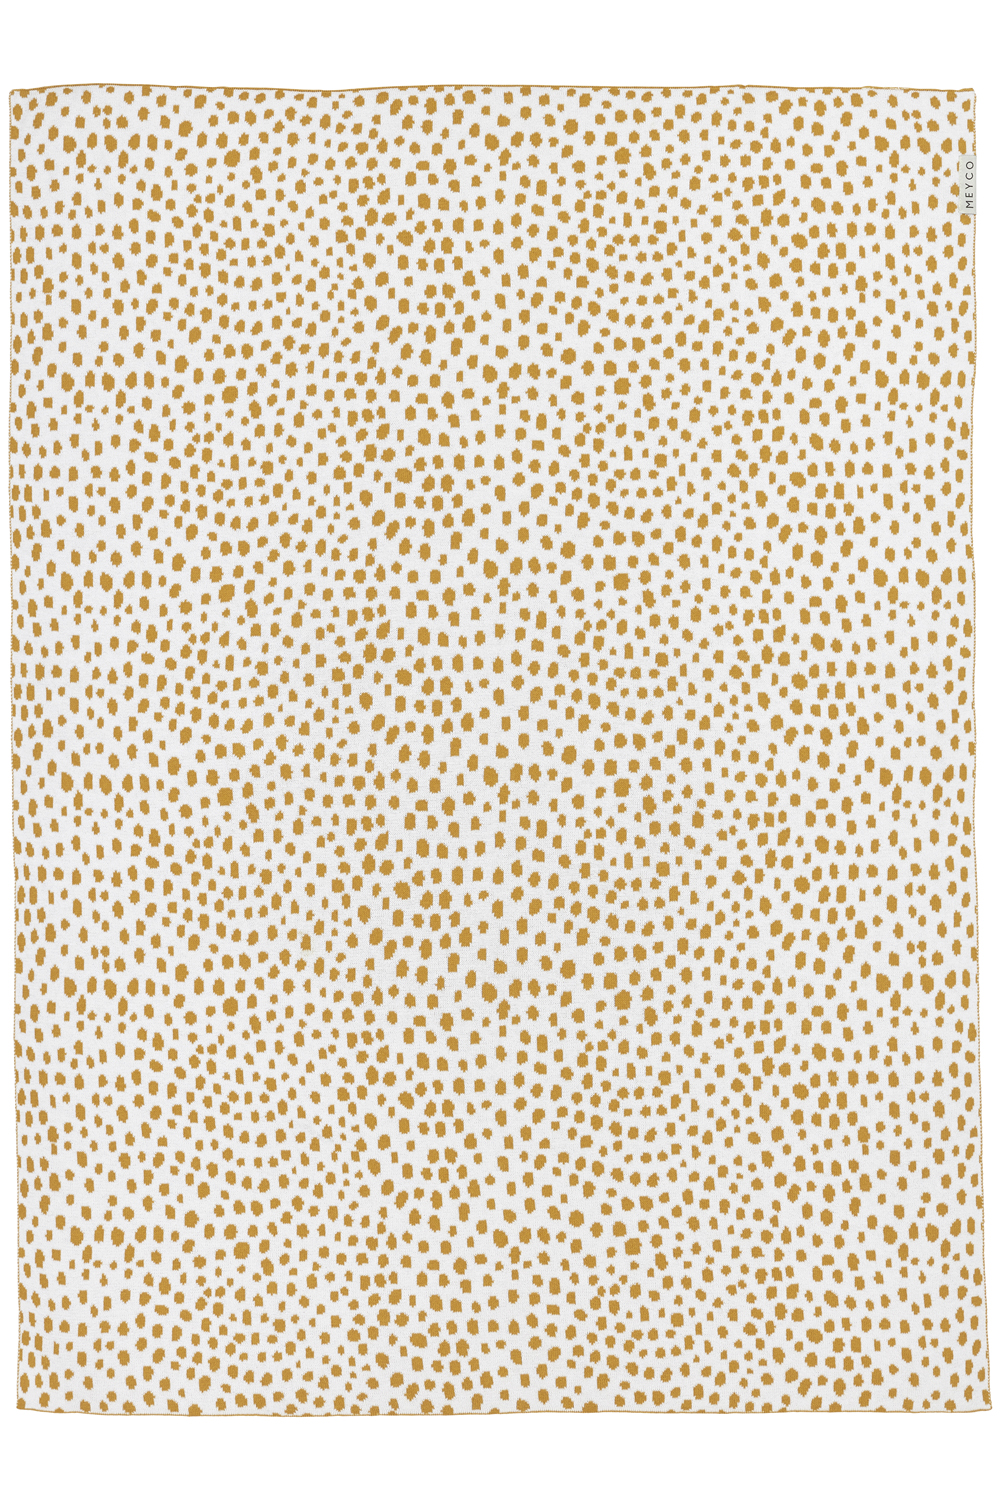 Wiegdeken Cheetah - Honey Gold - 75x100cm